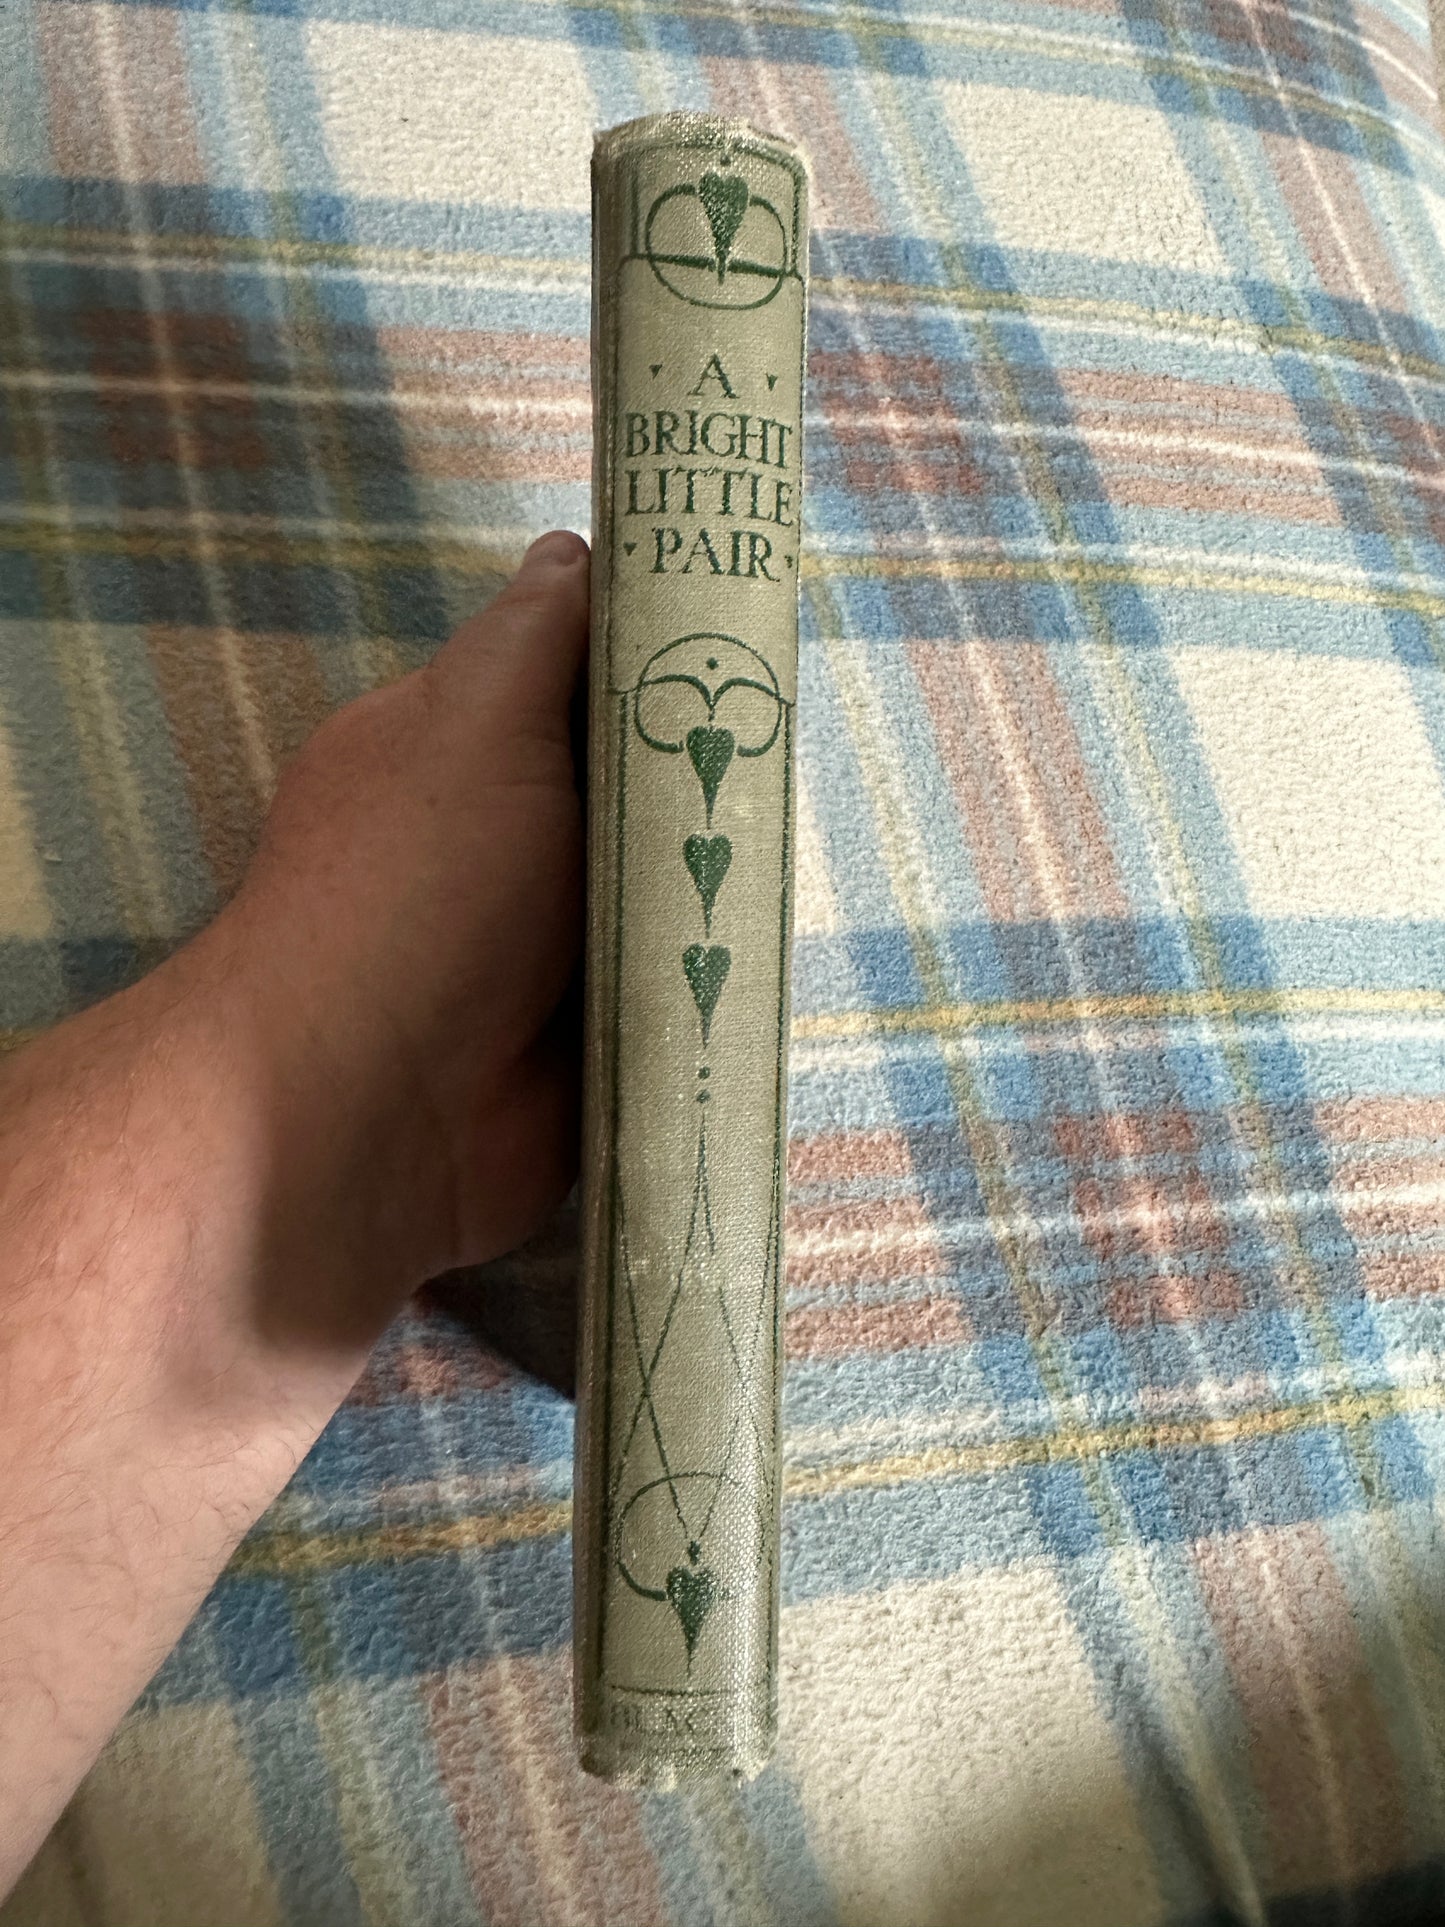 1935 A Bright Little Pair(Stories Old & New)L. E. Tiddeman(Alan Wright Illust) Blackie & Son Ltd